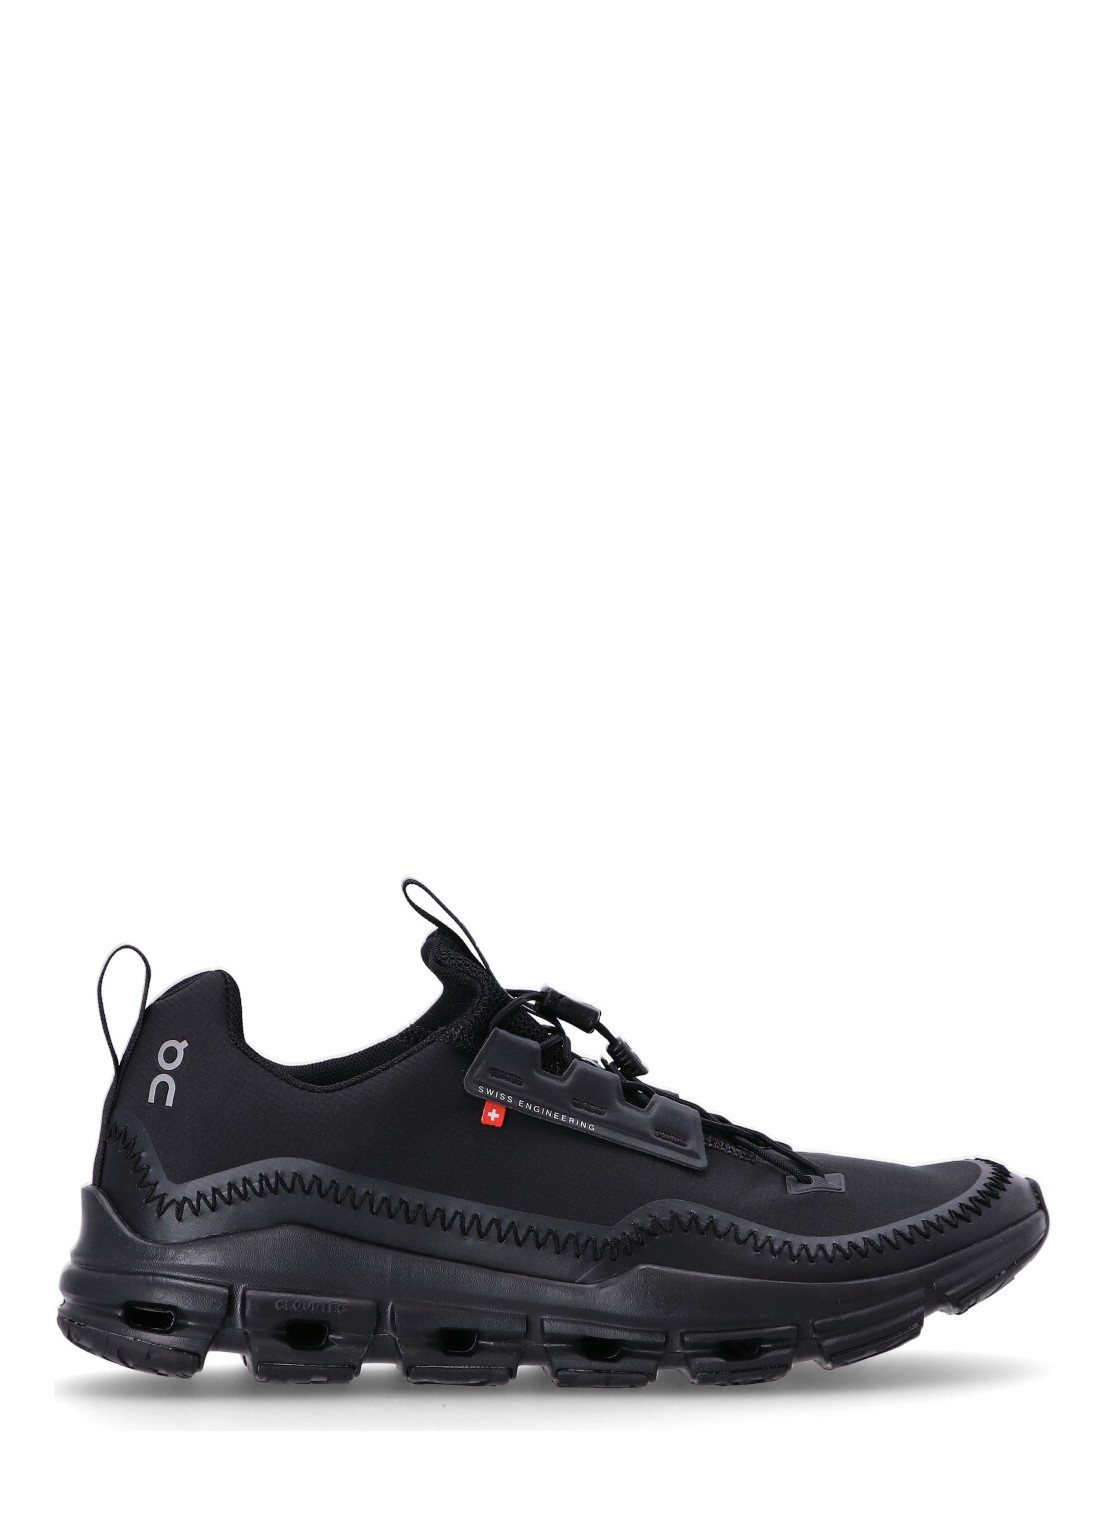 Sneaker on running cloudaway - 3md30450485 all black talla 42
 